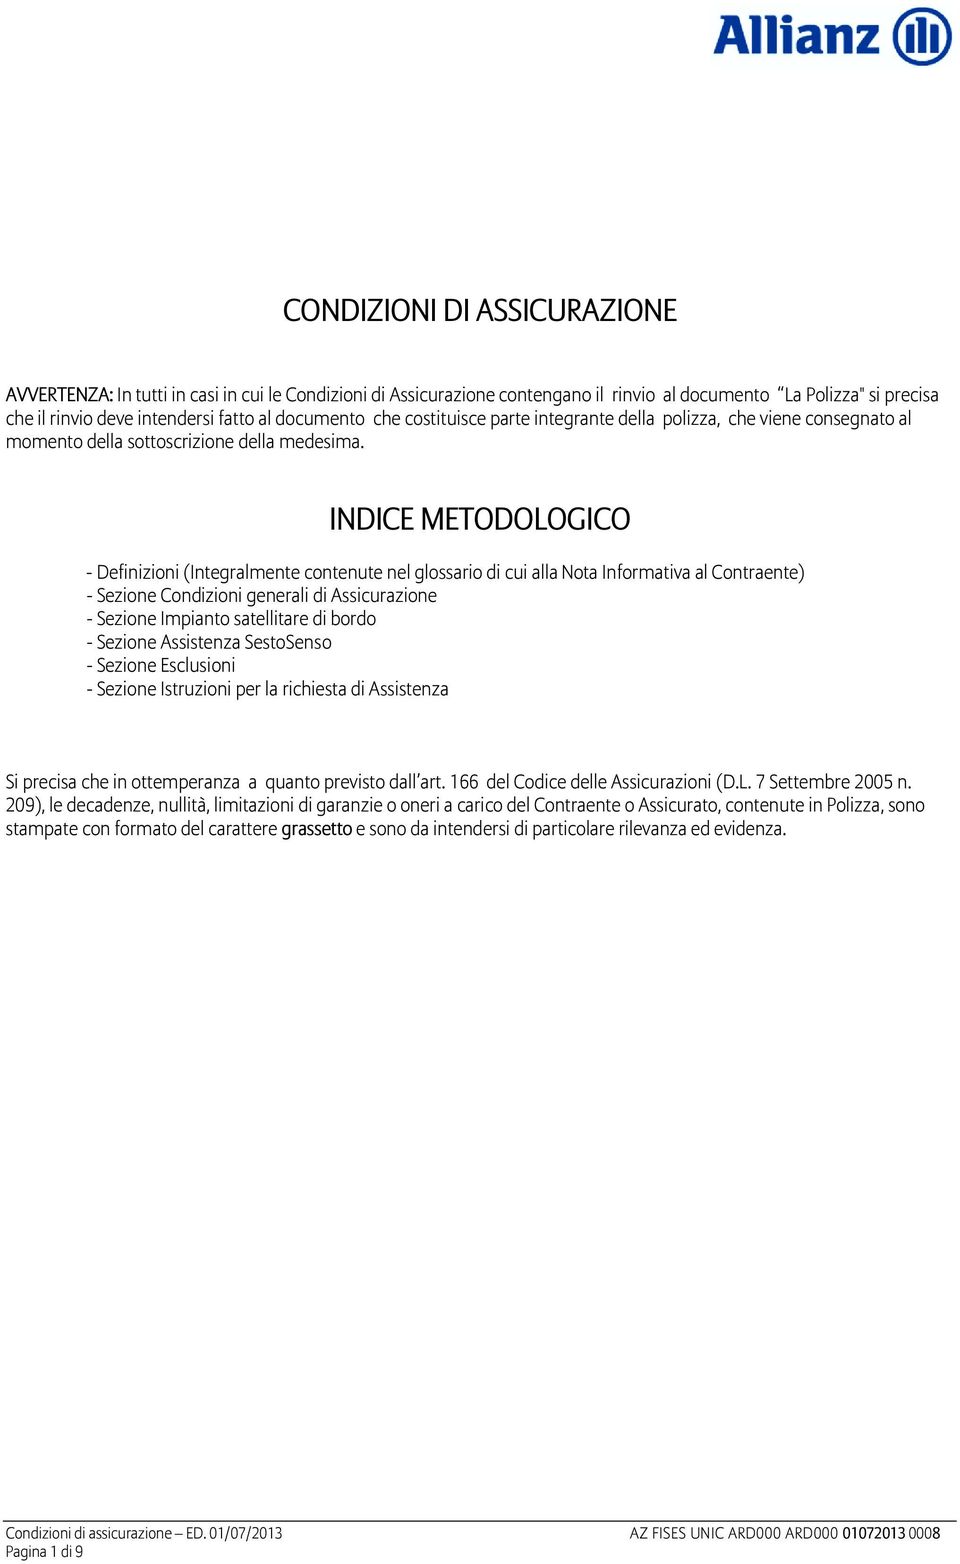 INDICE METODOLOGICO - Definizioni (Integralmente contenute nel glossario di cui alla Nota Informativa al Contraente) - Sezione Condizioni generali di Assicurazione - Sezione Impianto satellitare di